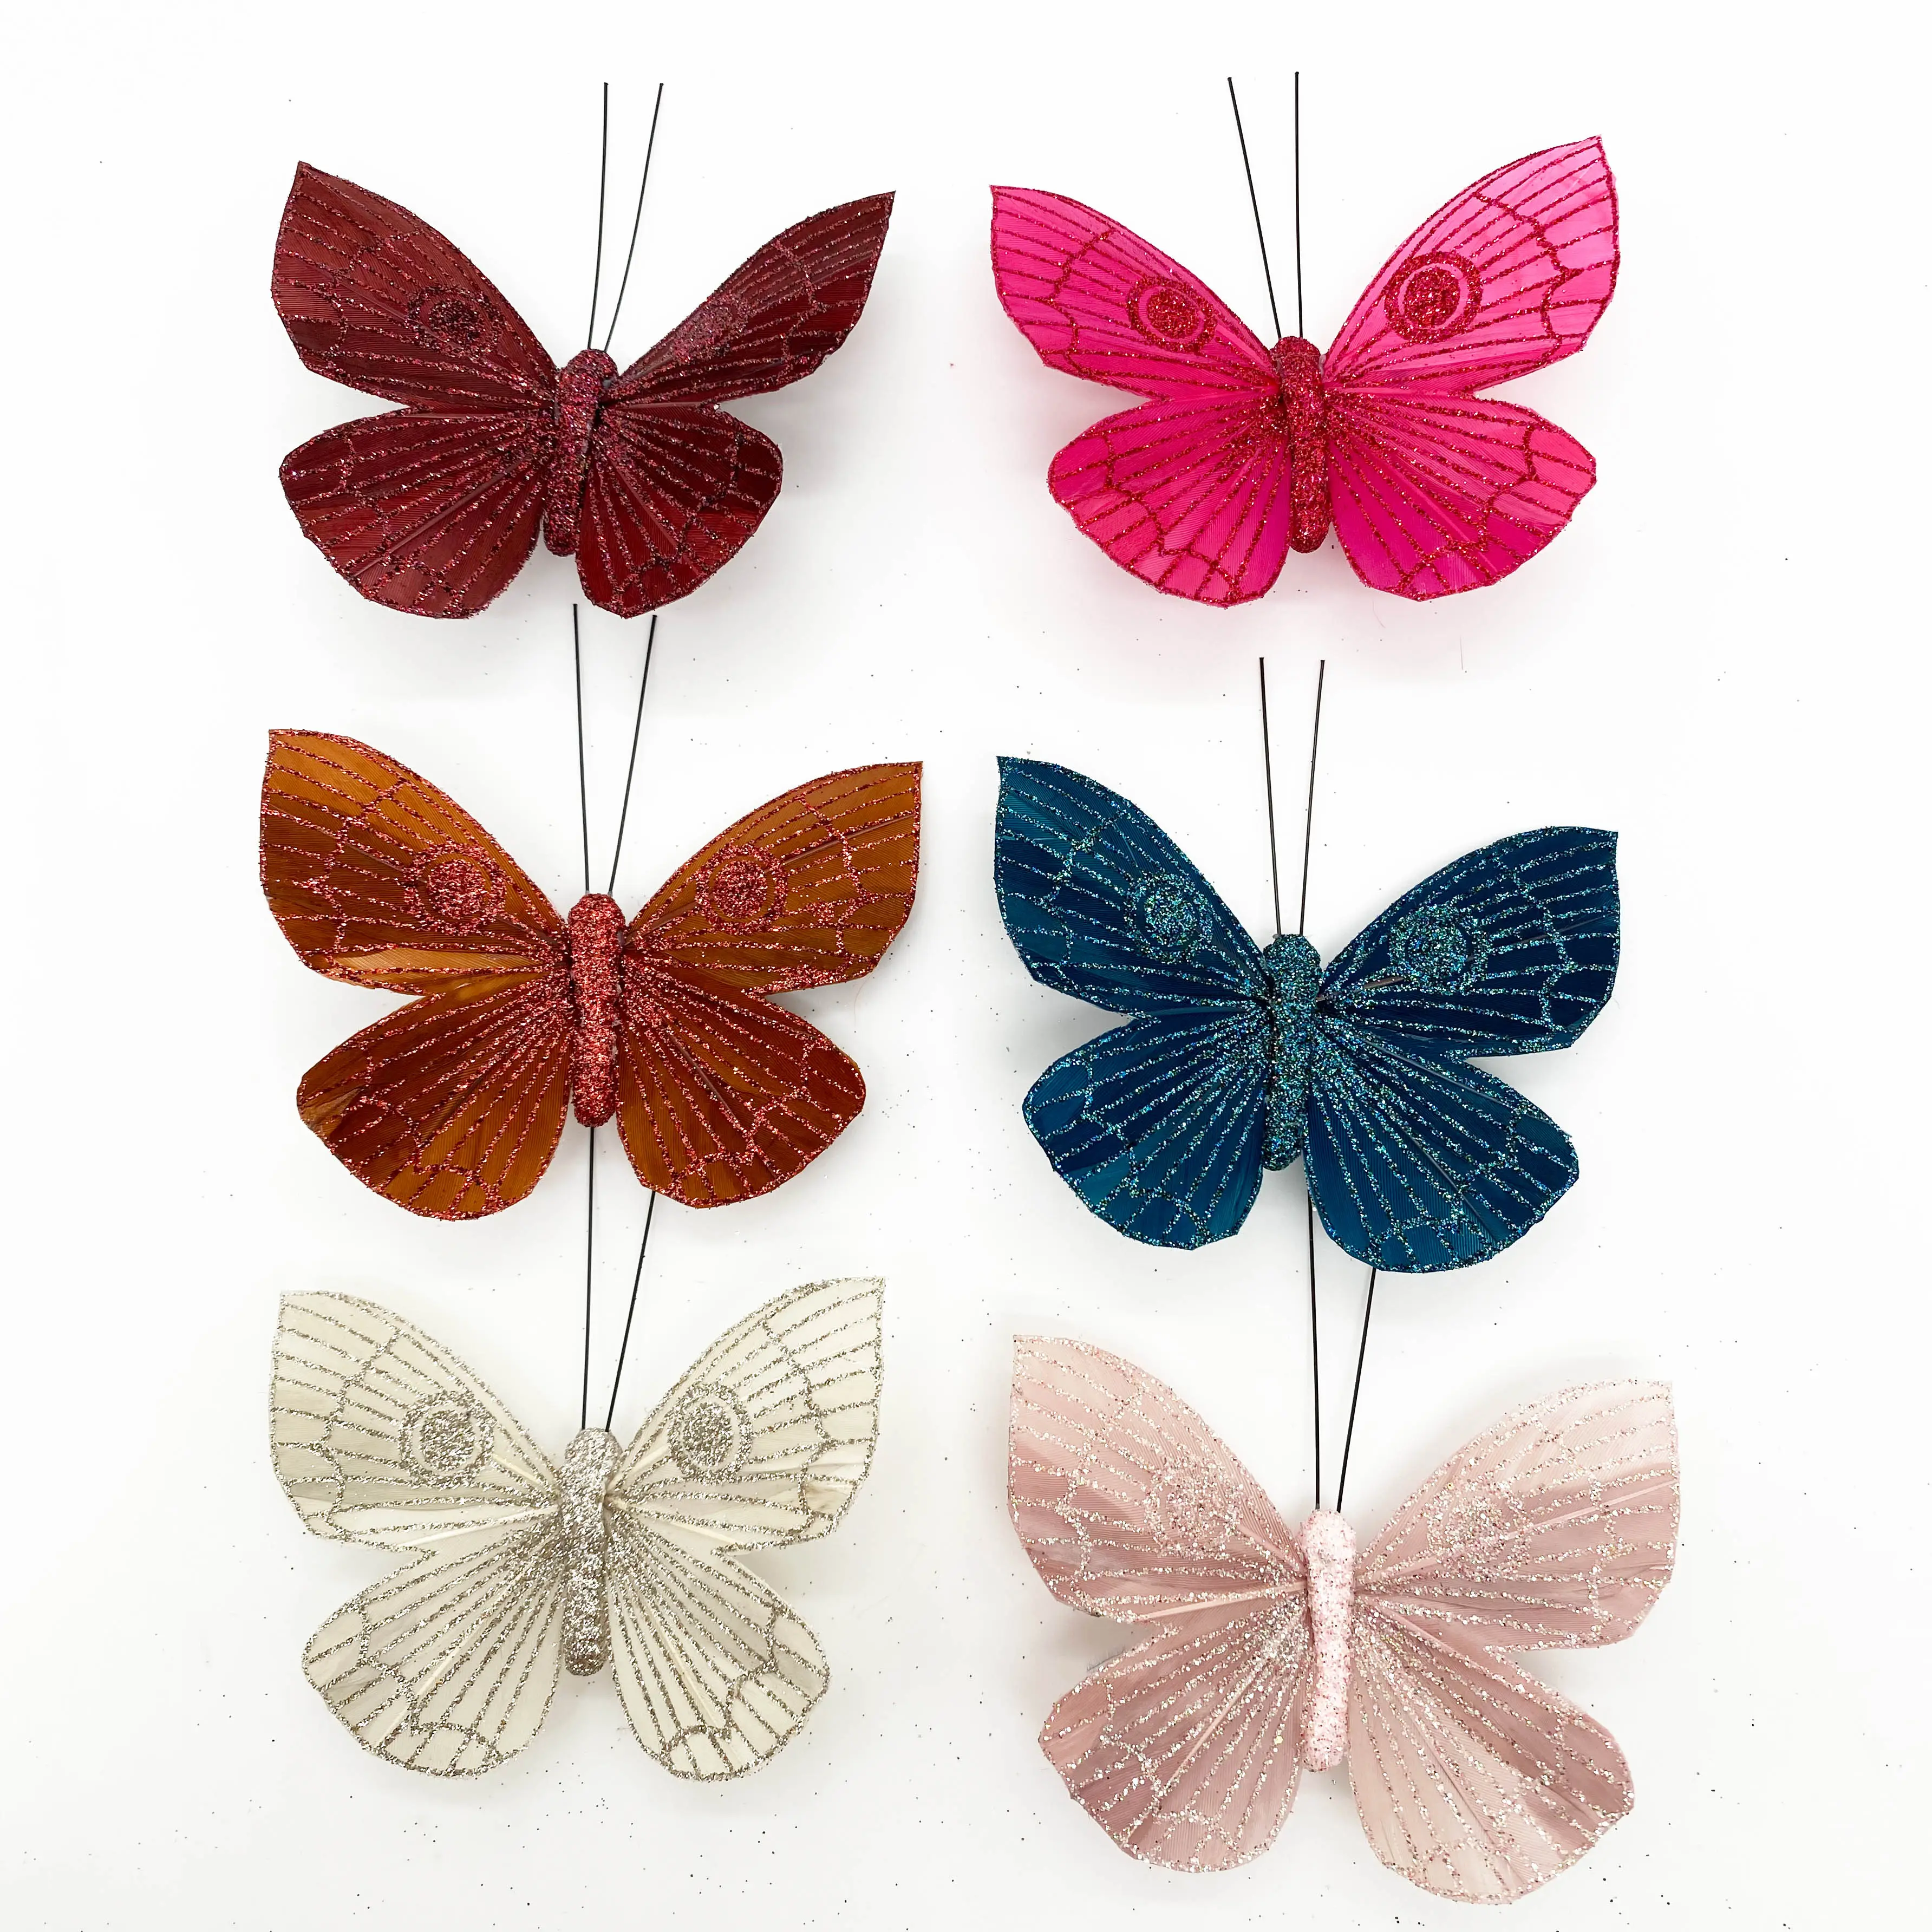 Mariposa de plumas para decoración navideña y adorno de boda mariposas artificiales multicolor ala de plumas mariposa pequeña